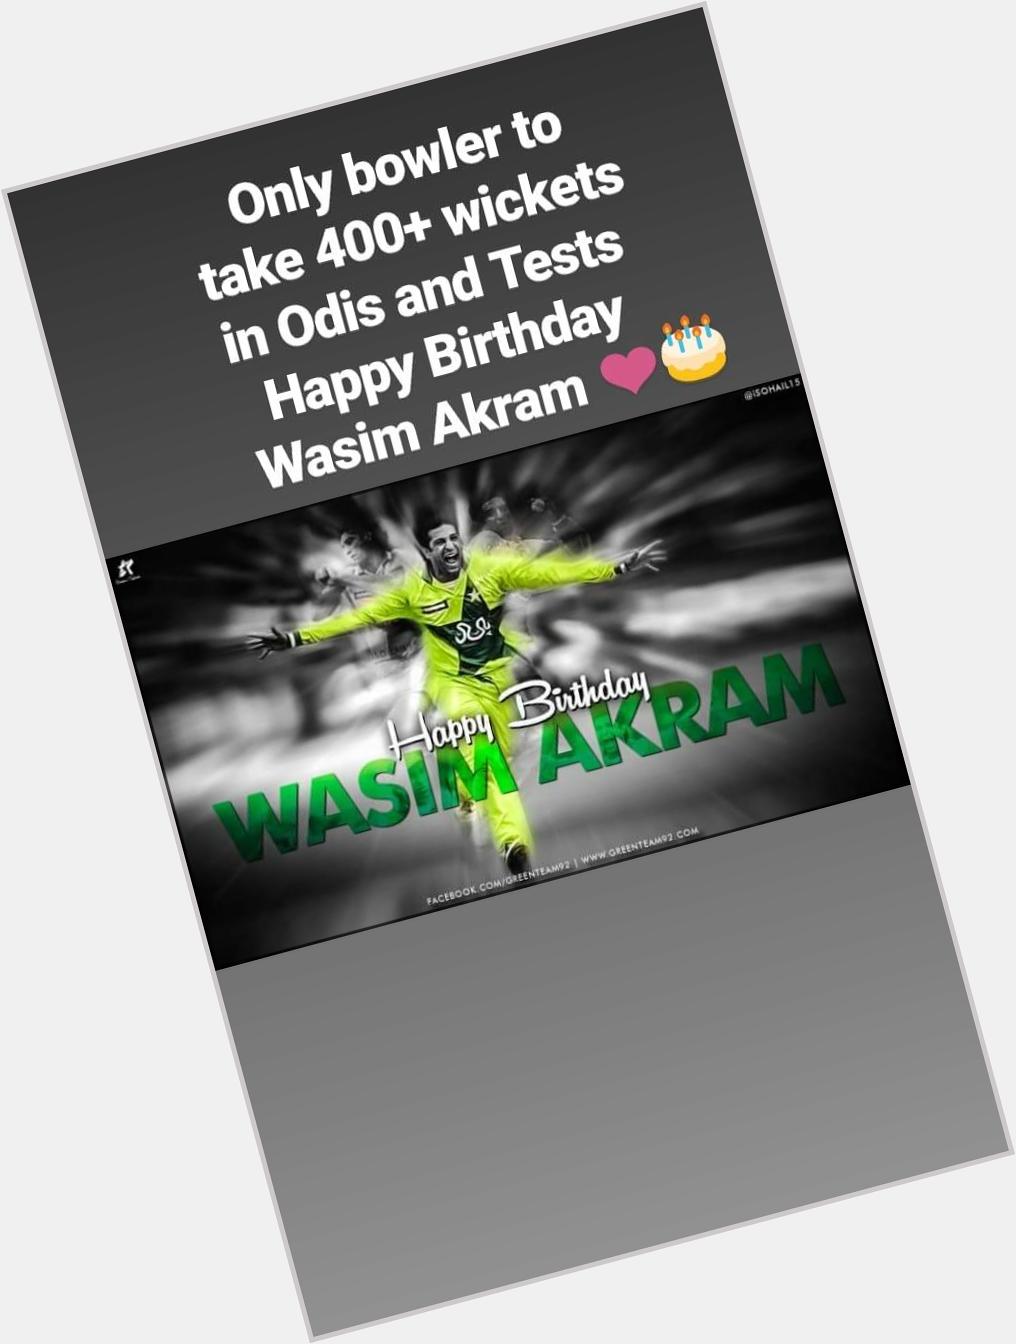 Happy birthday Wasim Akram      Greatest fast bowler of Pakistan   